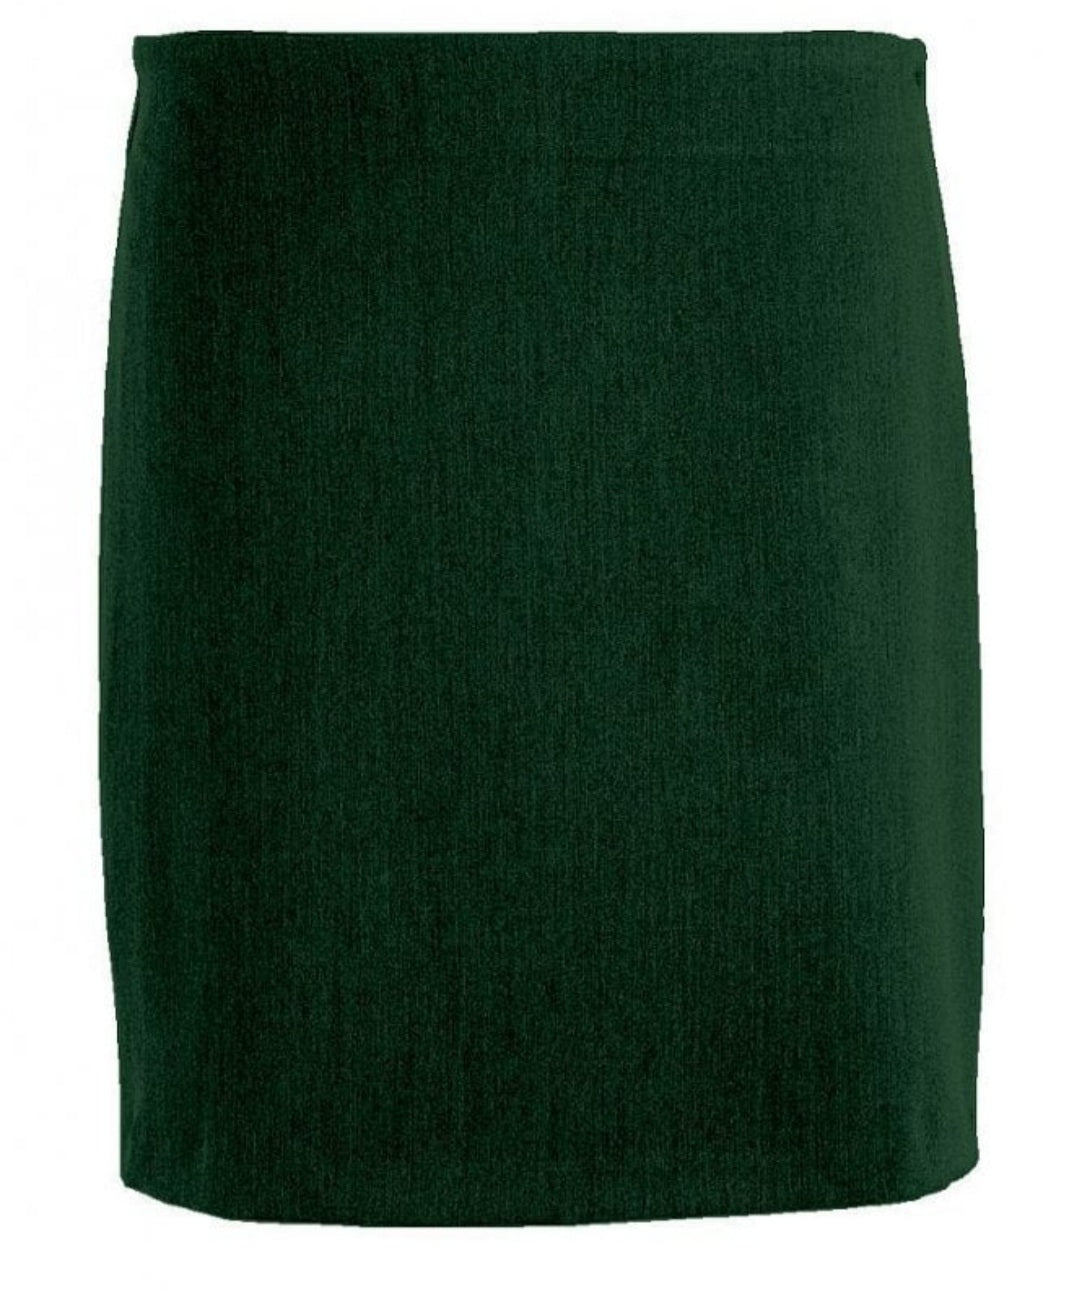 Green straight skirt